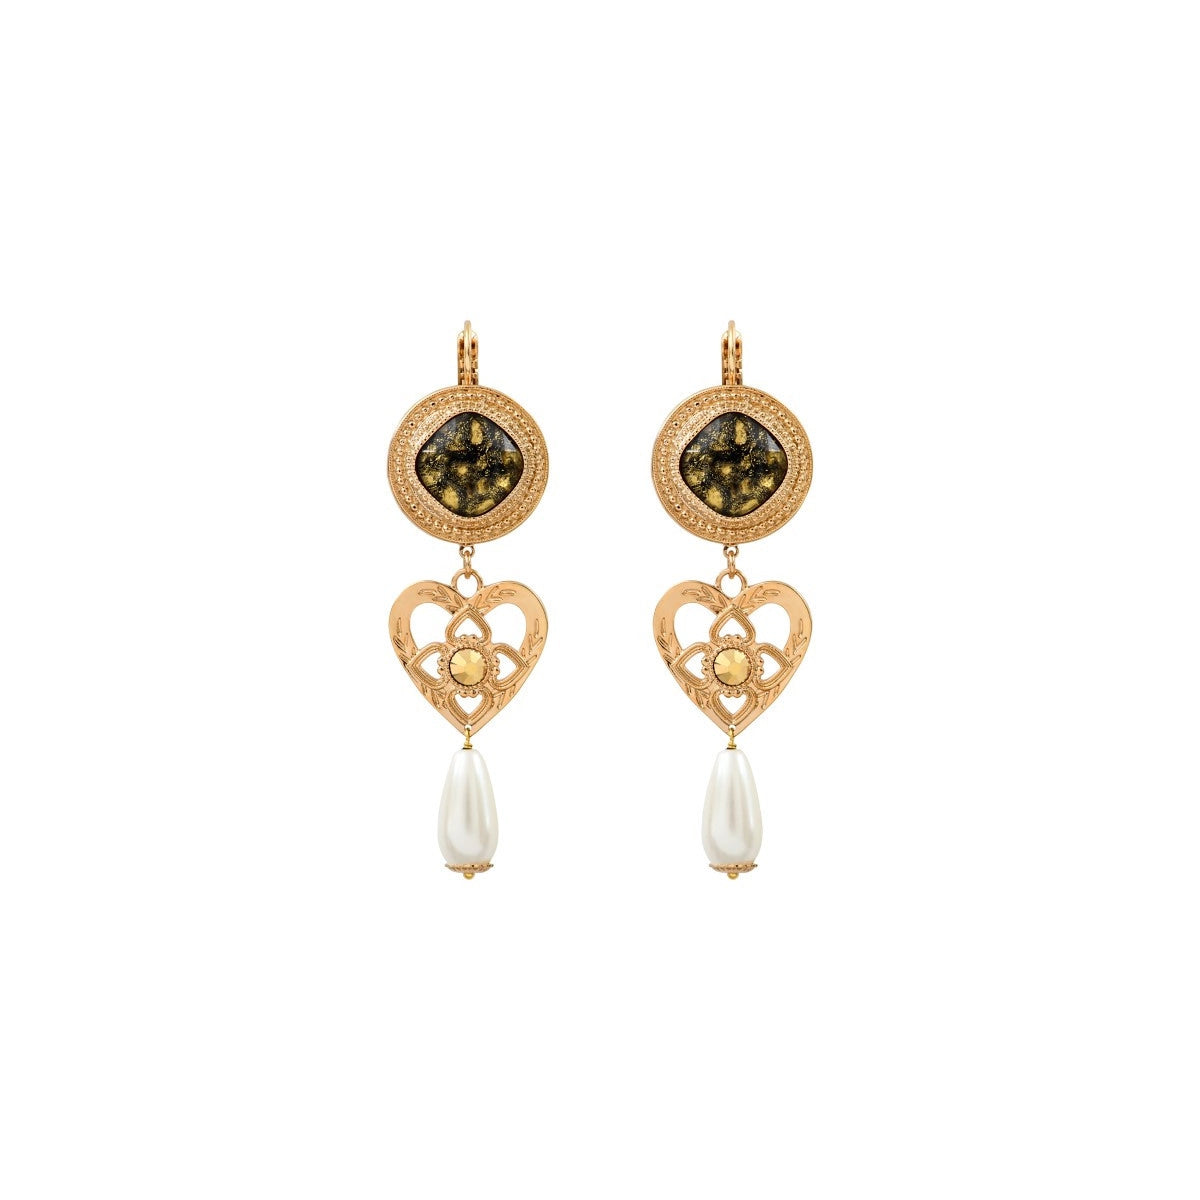 Sophisticated Prestige crystal mother-of-pearl bead sleeper earrings